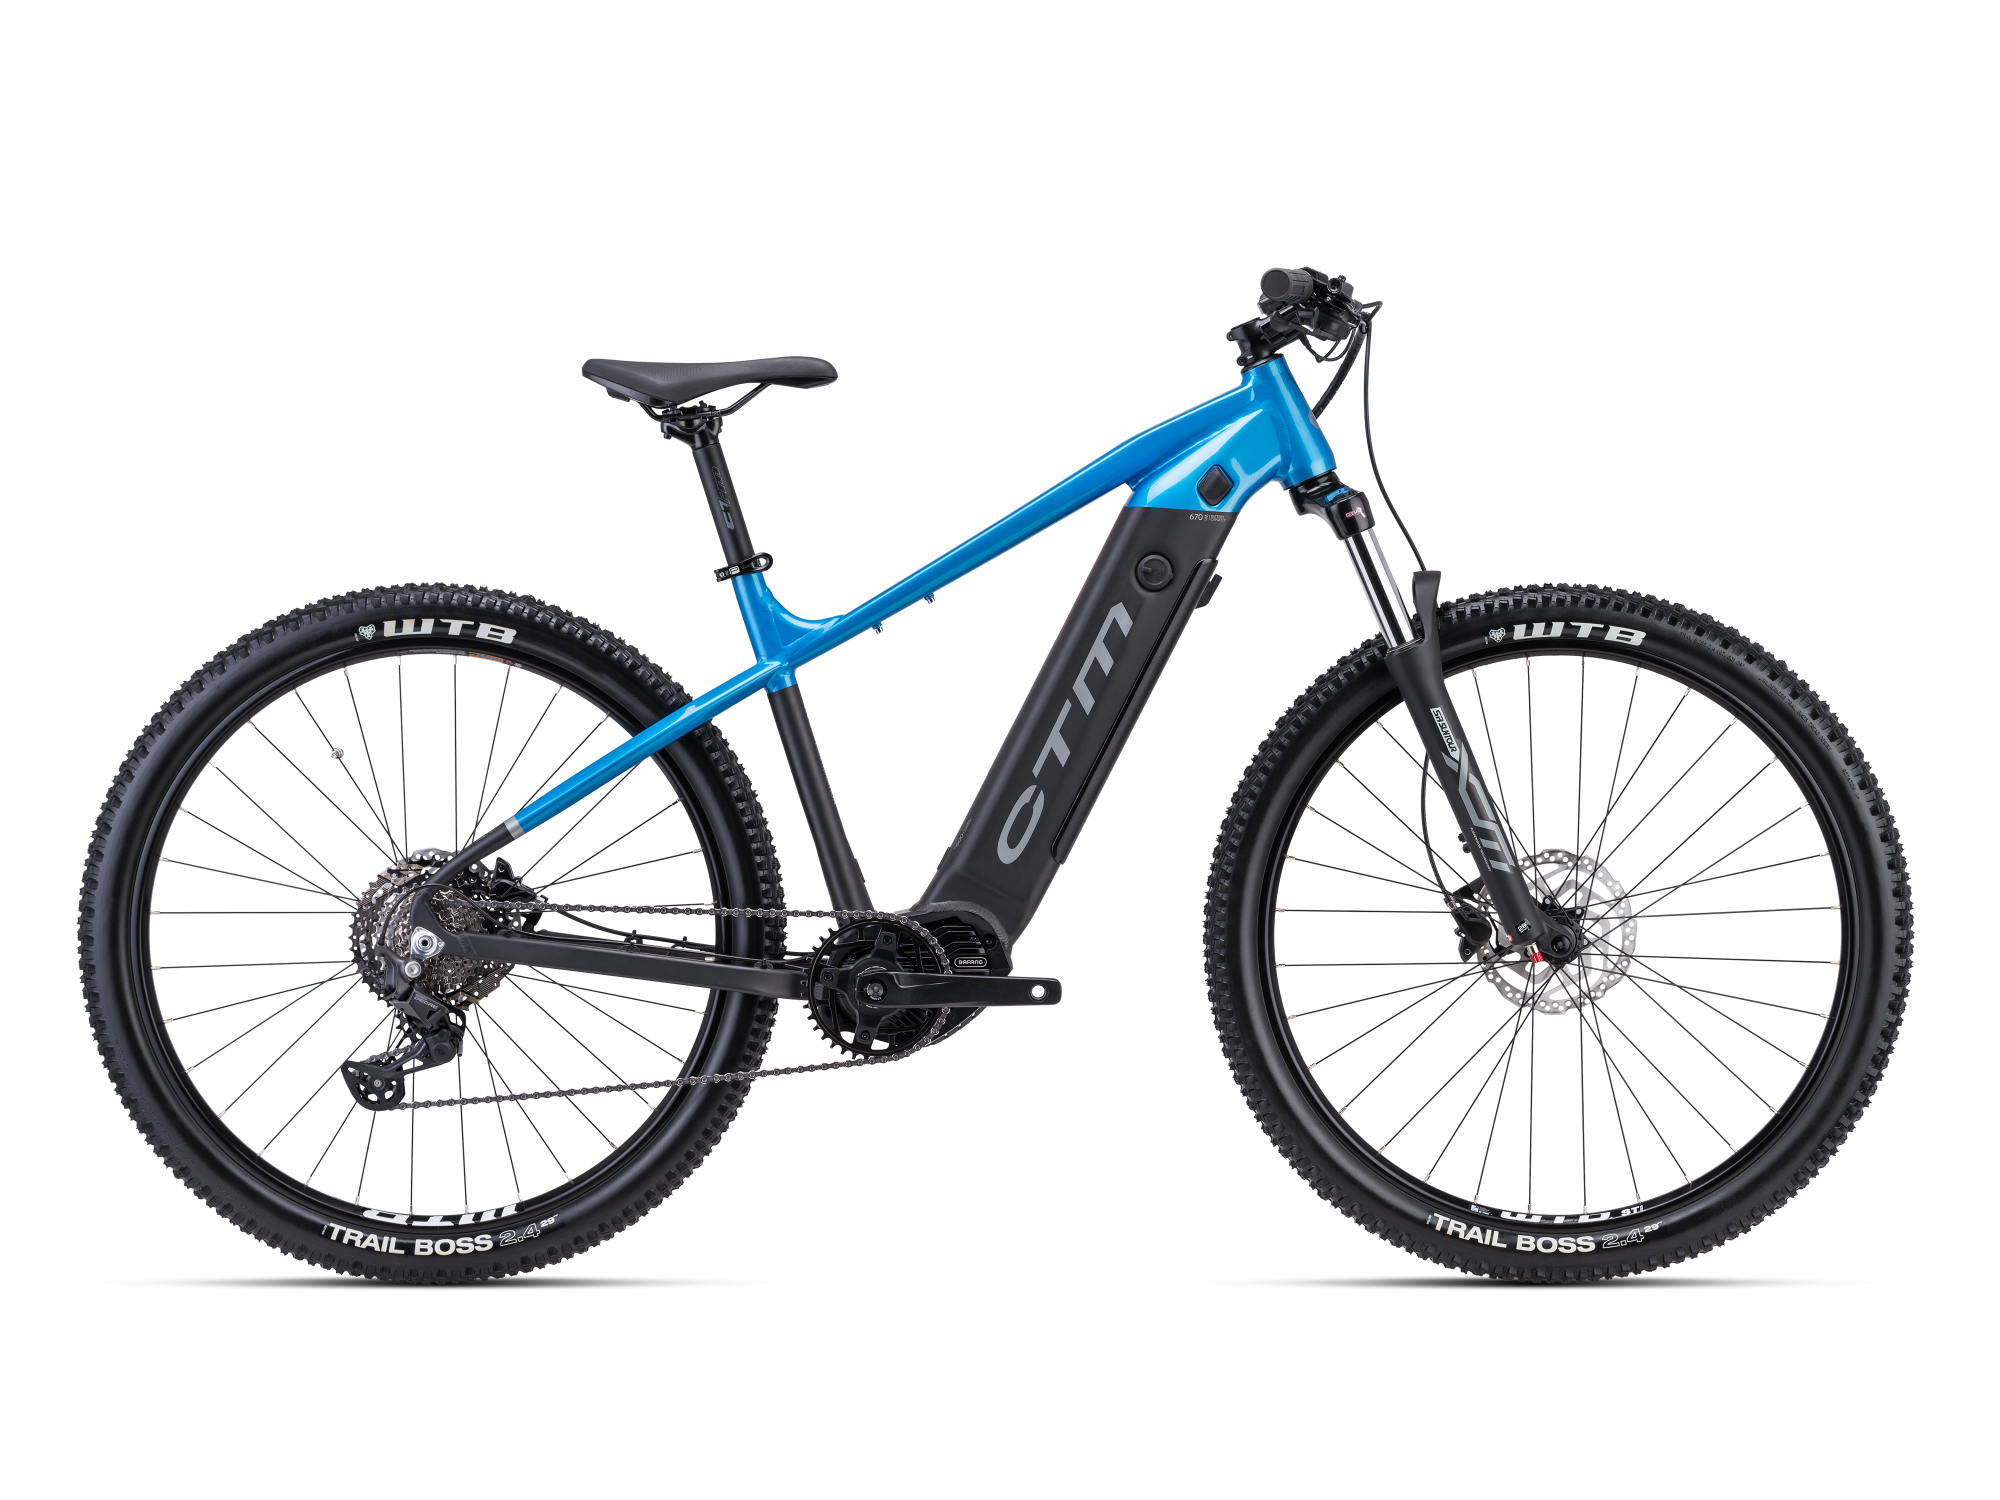 Električni bicikl CTM Wire plavo crne boje